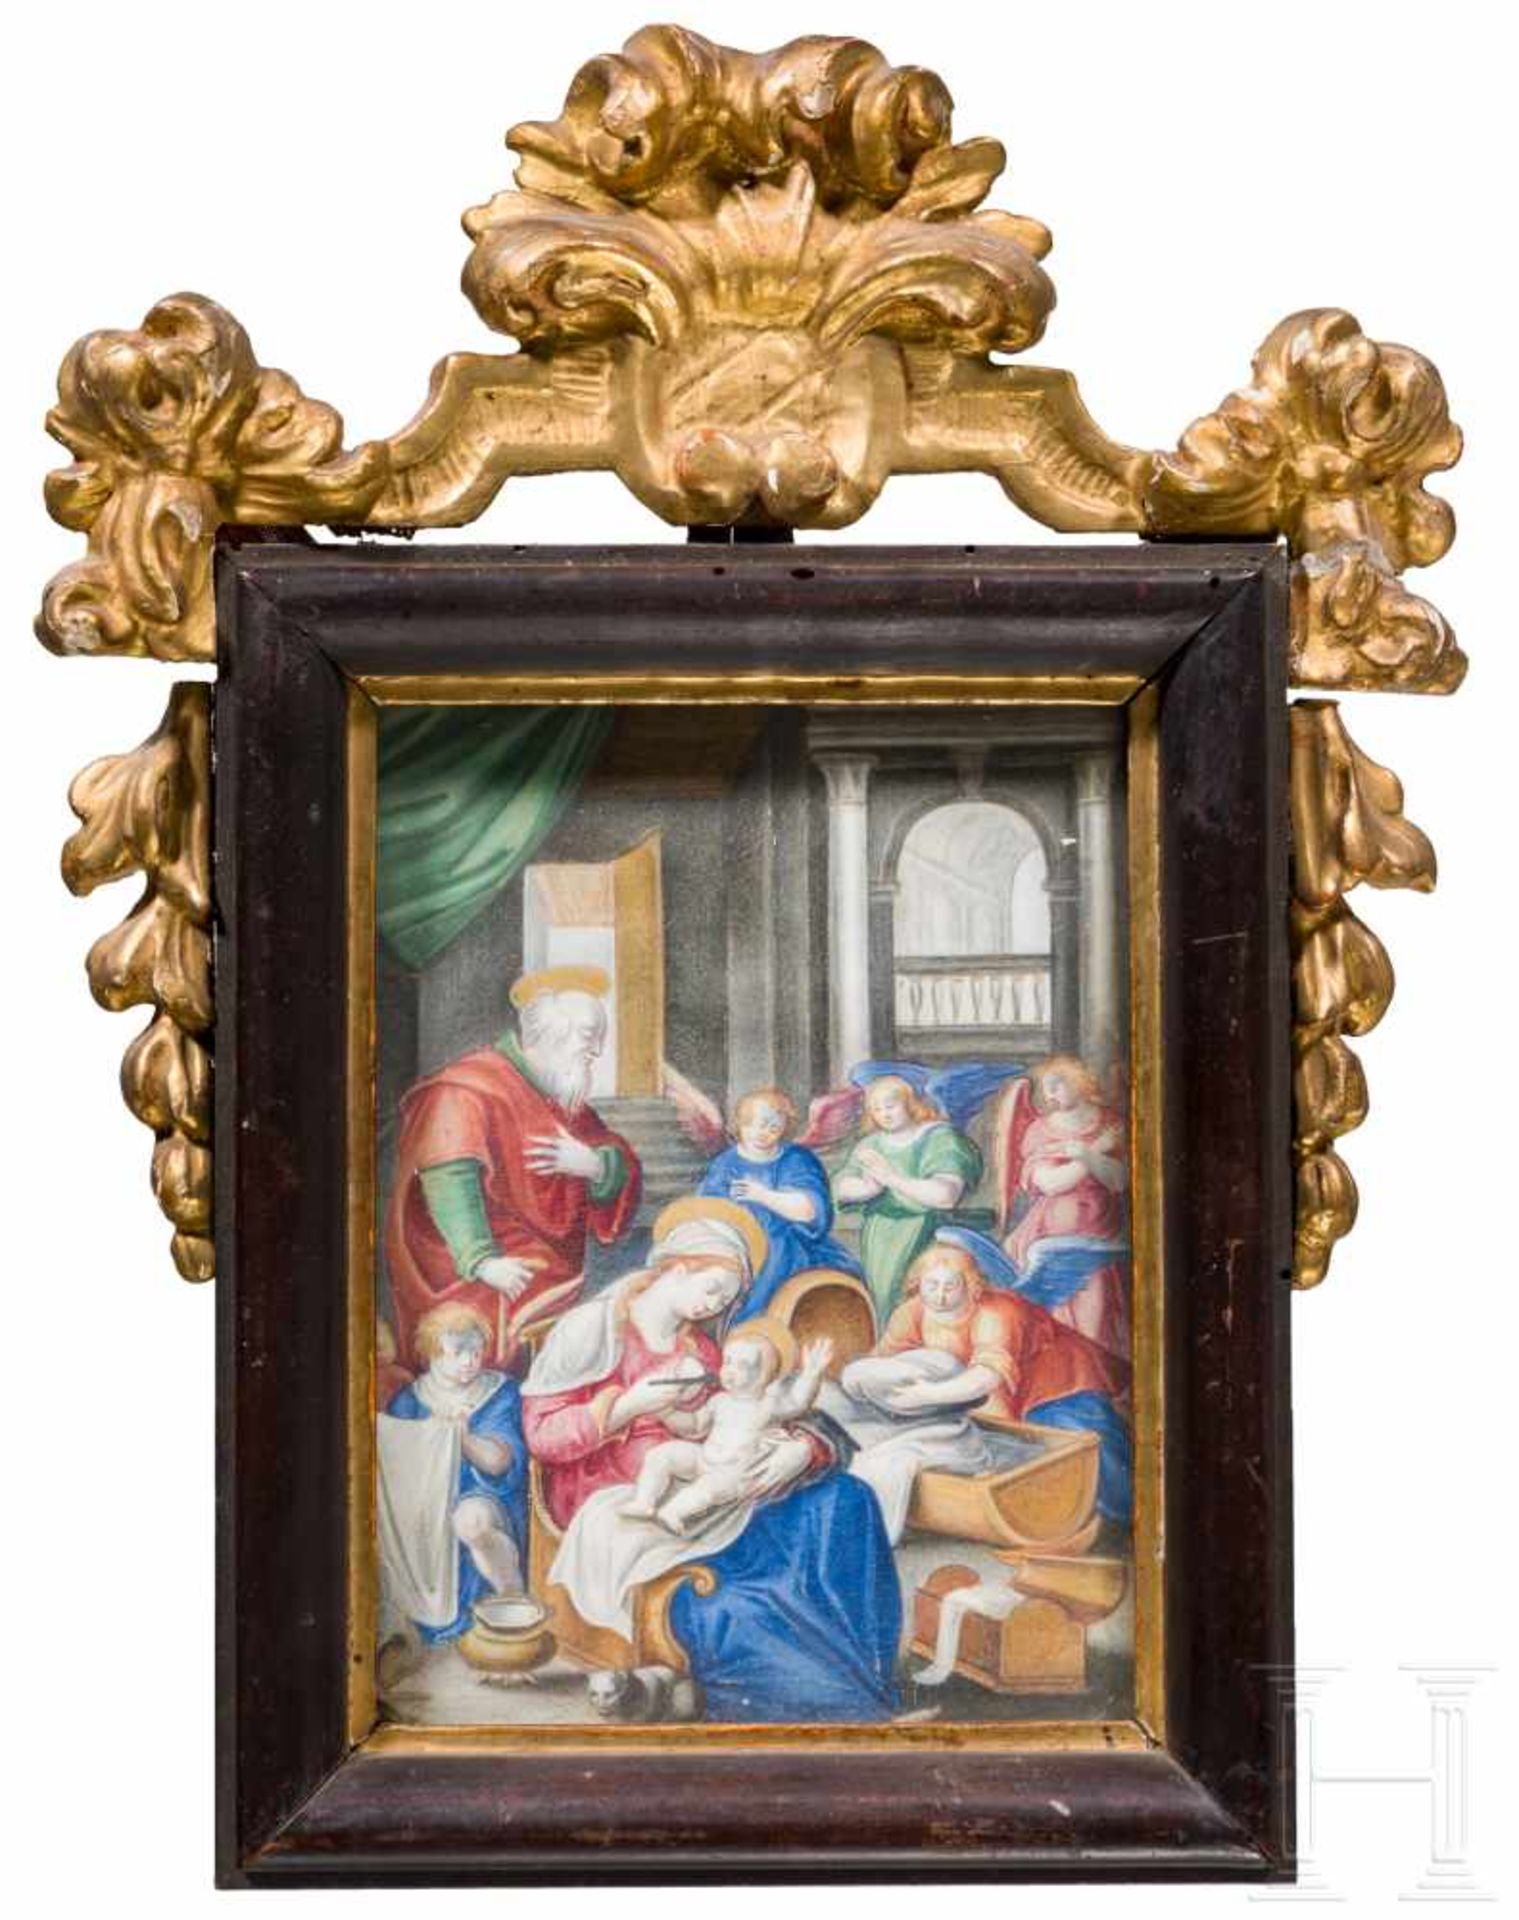 Barockrahmen mit Gemälde der Heiligen Familie, Frankreich, 18. Jhdt.Auf Pergament mehrfarbig und